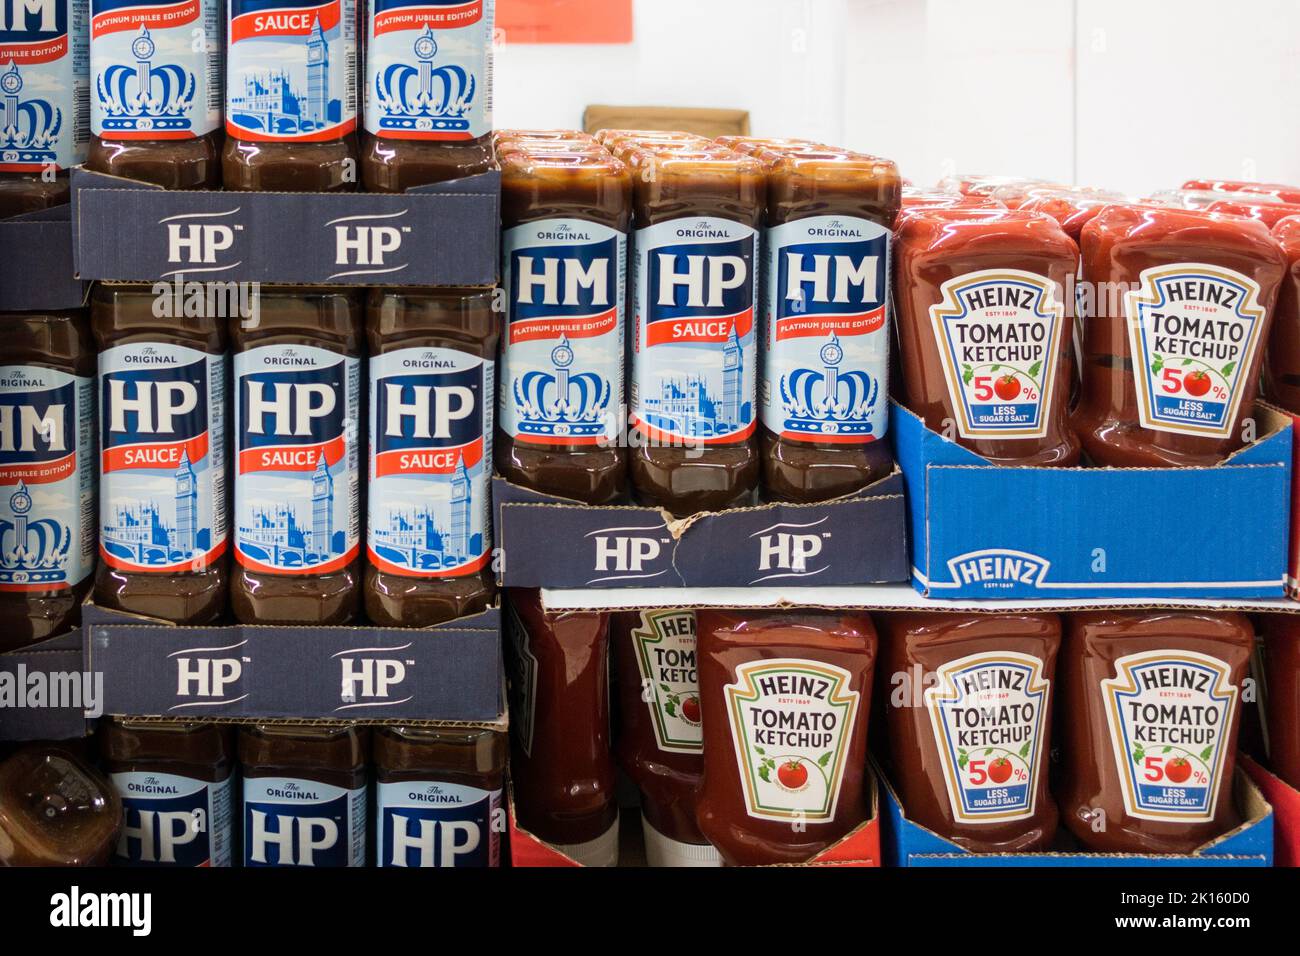 Sauce HP et ketchup Heinz Tomato sur le plancher du magasin Banque D'Images